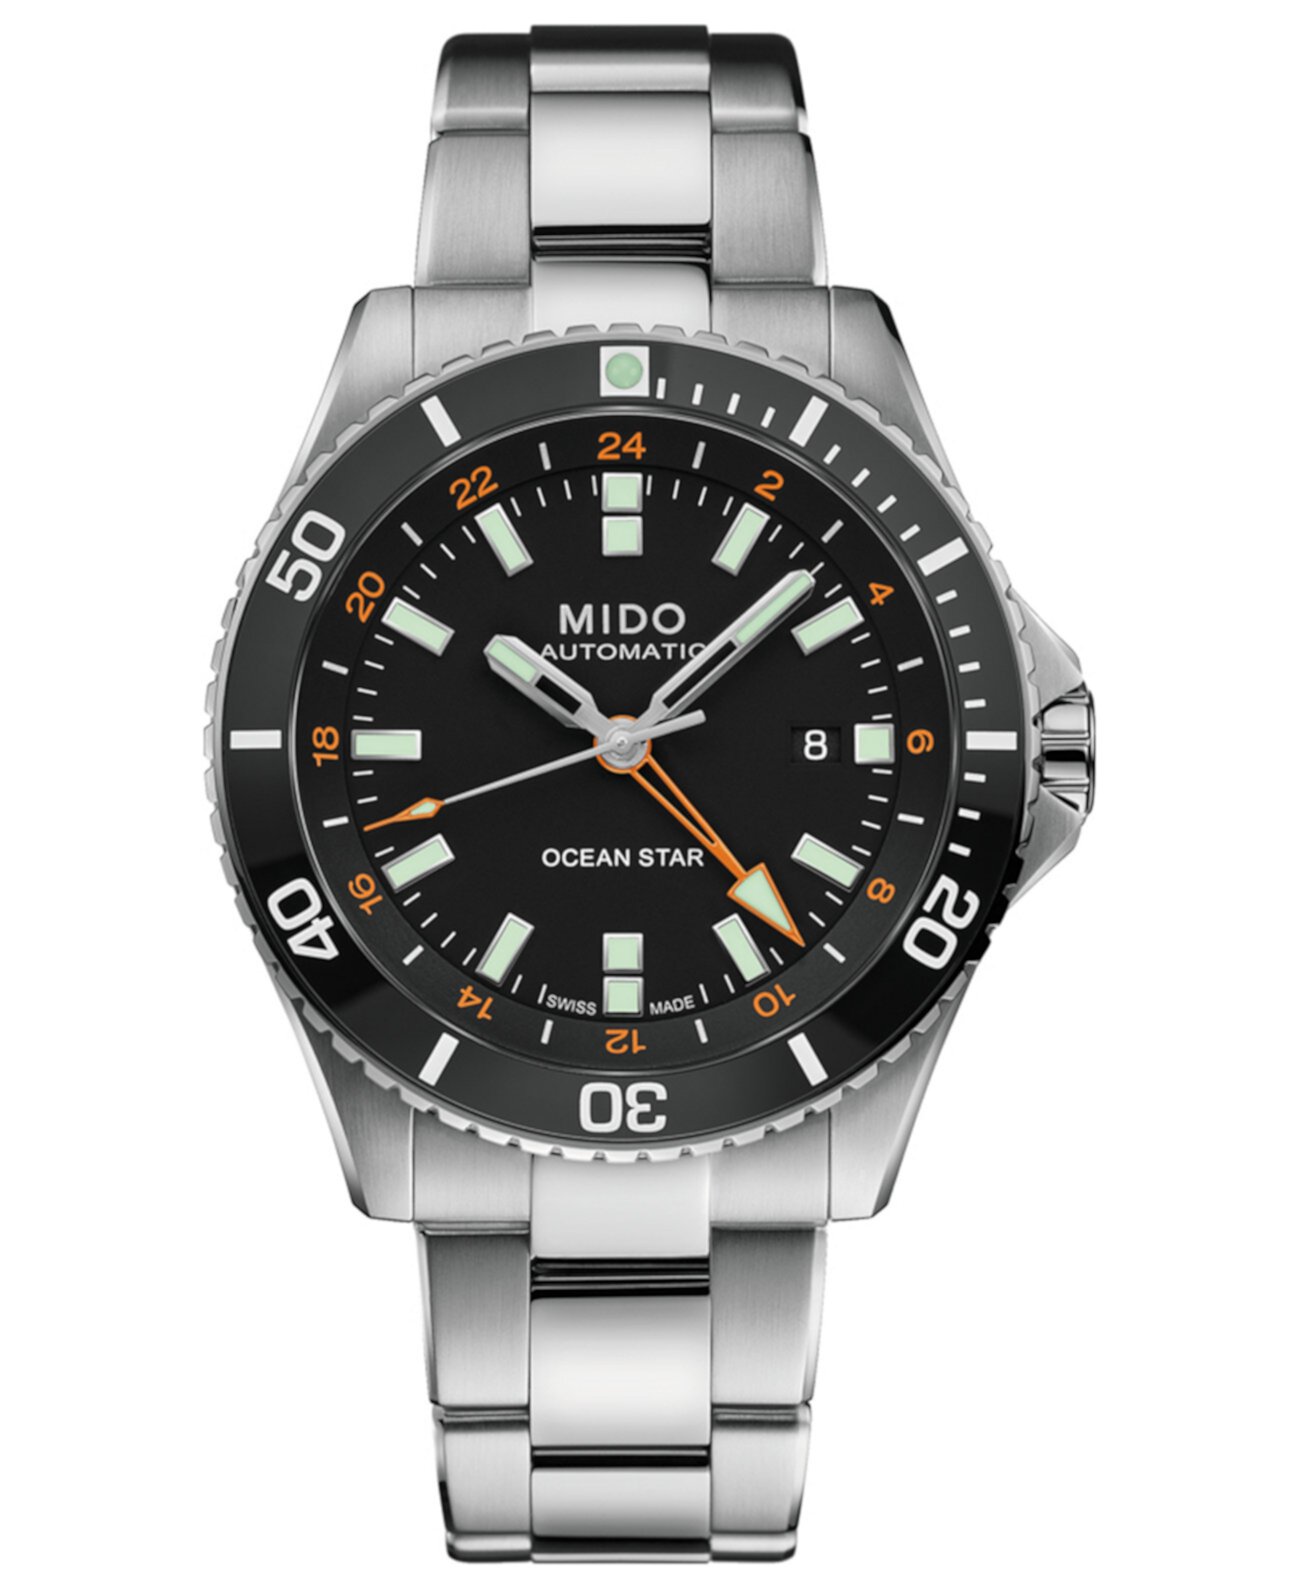 Мужские швейцарские автоматические часы Ocean Star GMT с браслетом из нержавеющей стали 44 мм MIDO